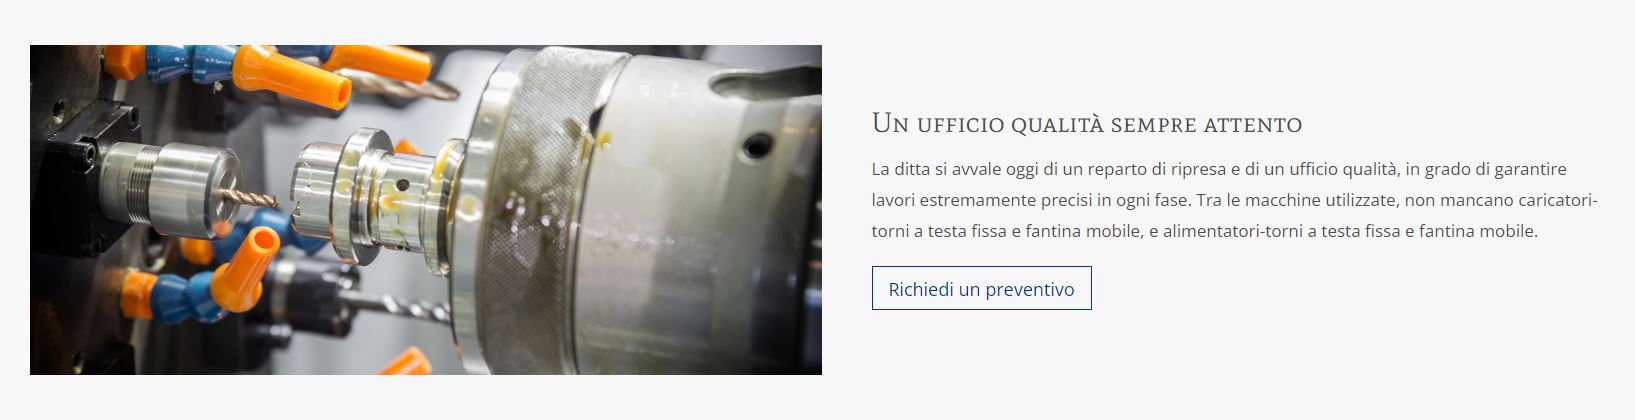 Officina Meccanica di Precisione Torneria Automatica Pozzo Franco e Pozzo Massimo Snc dal 1975